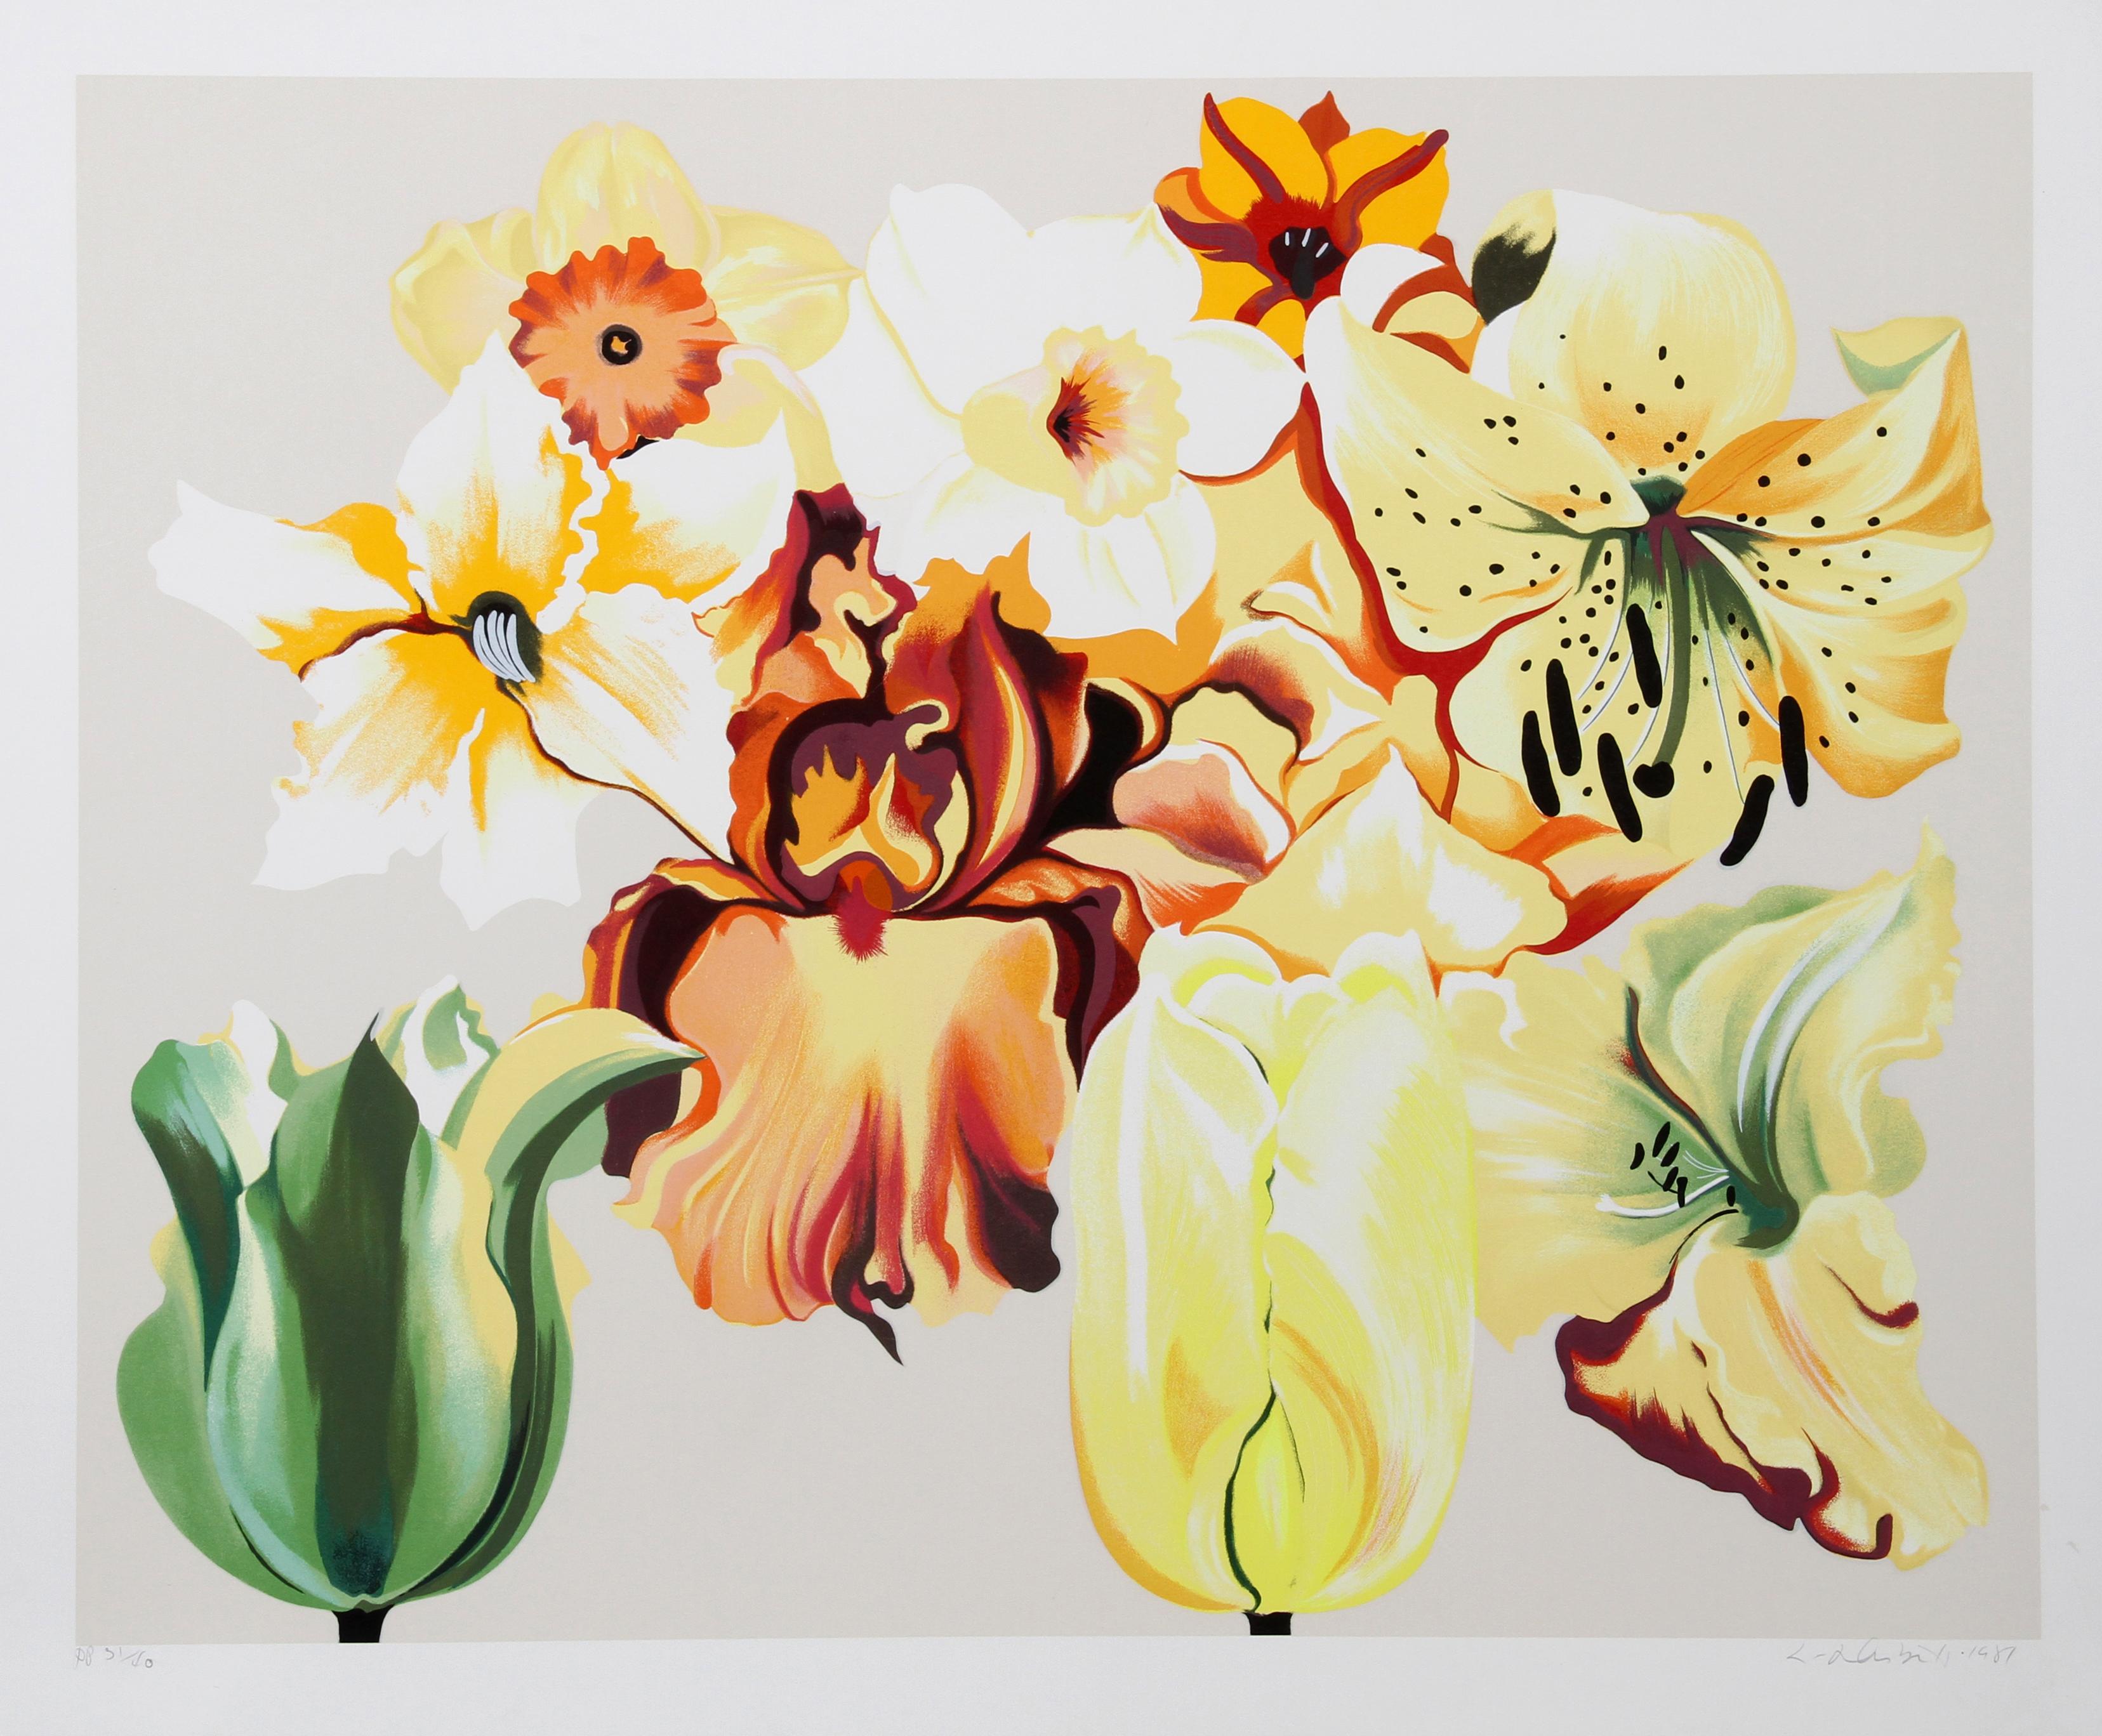 Künstler: Lowell Blair Nesbitt, Amerikaner (1933 - 1993)
Titel: Insel der gelben Blumen
Jahr: 1981
Medium: Serigraphie, signiert und nummeriert mit Bleistift
Auflage: 200
Bildgröße: 32 x 40 Zoll
Größe: 38 Zoll x 46 Zoll (96,52 cm x 116,84 cm)